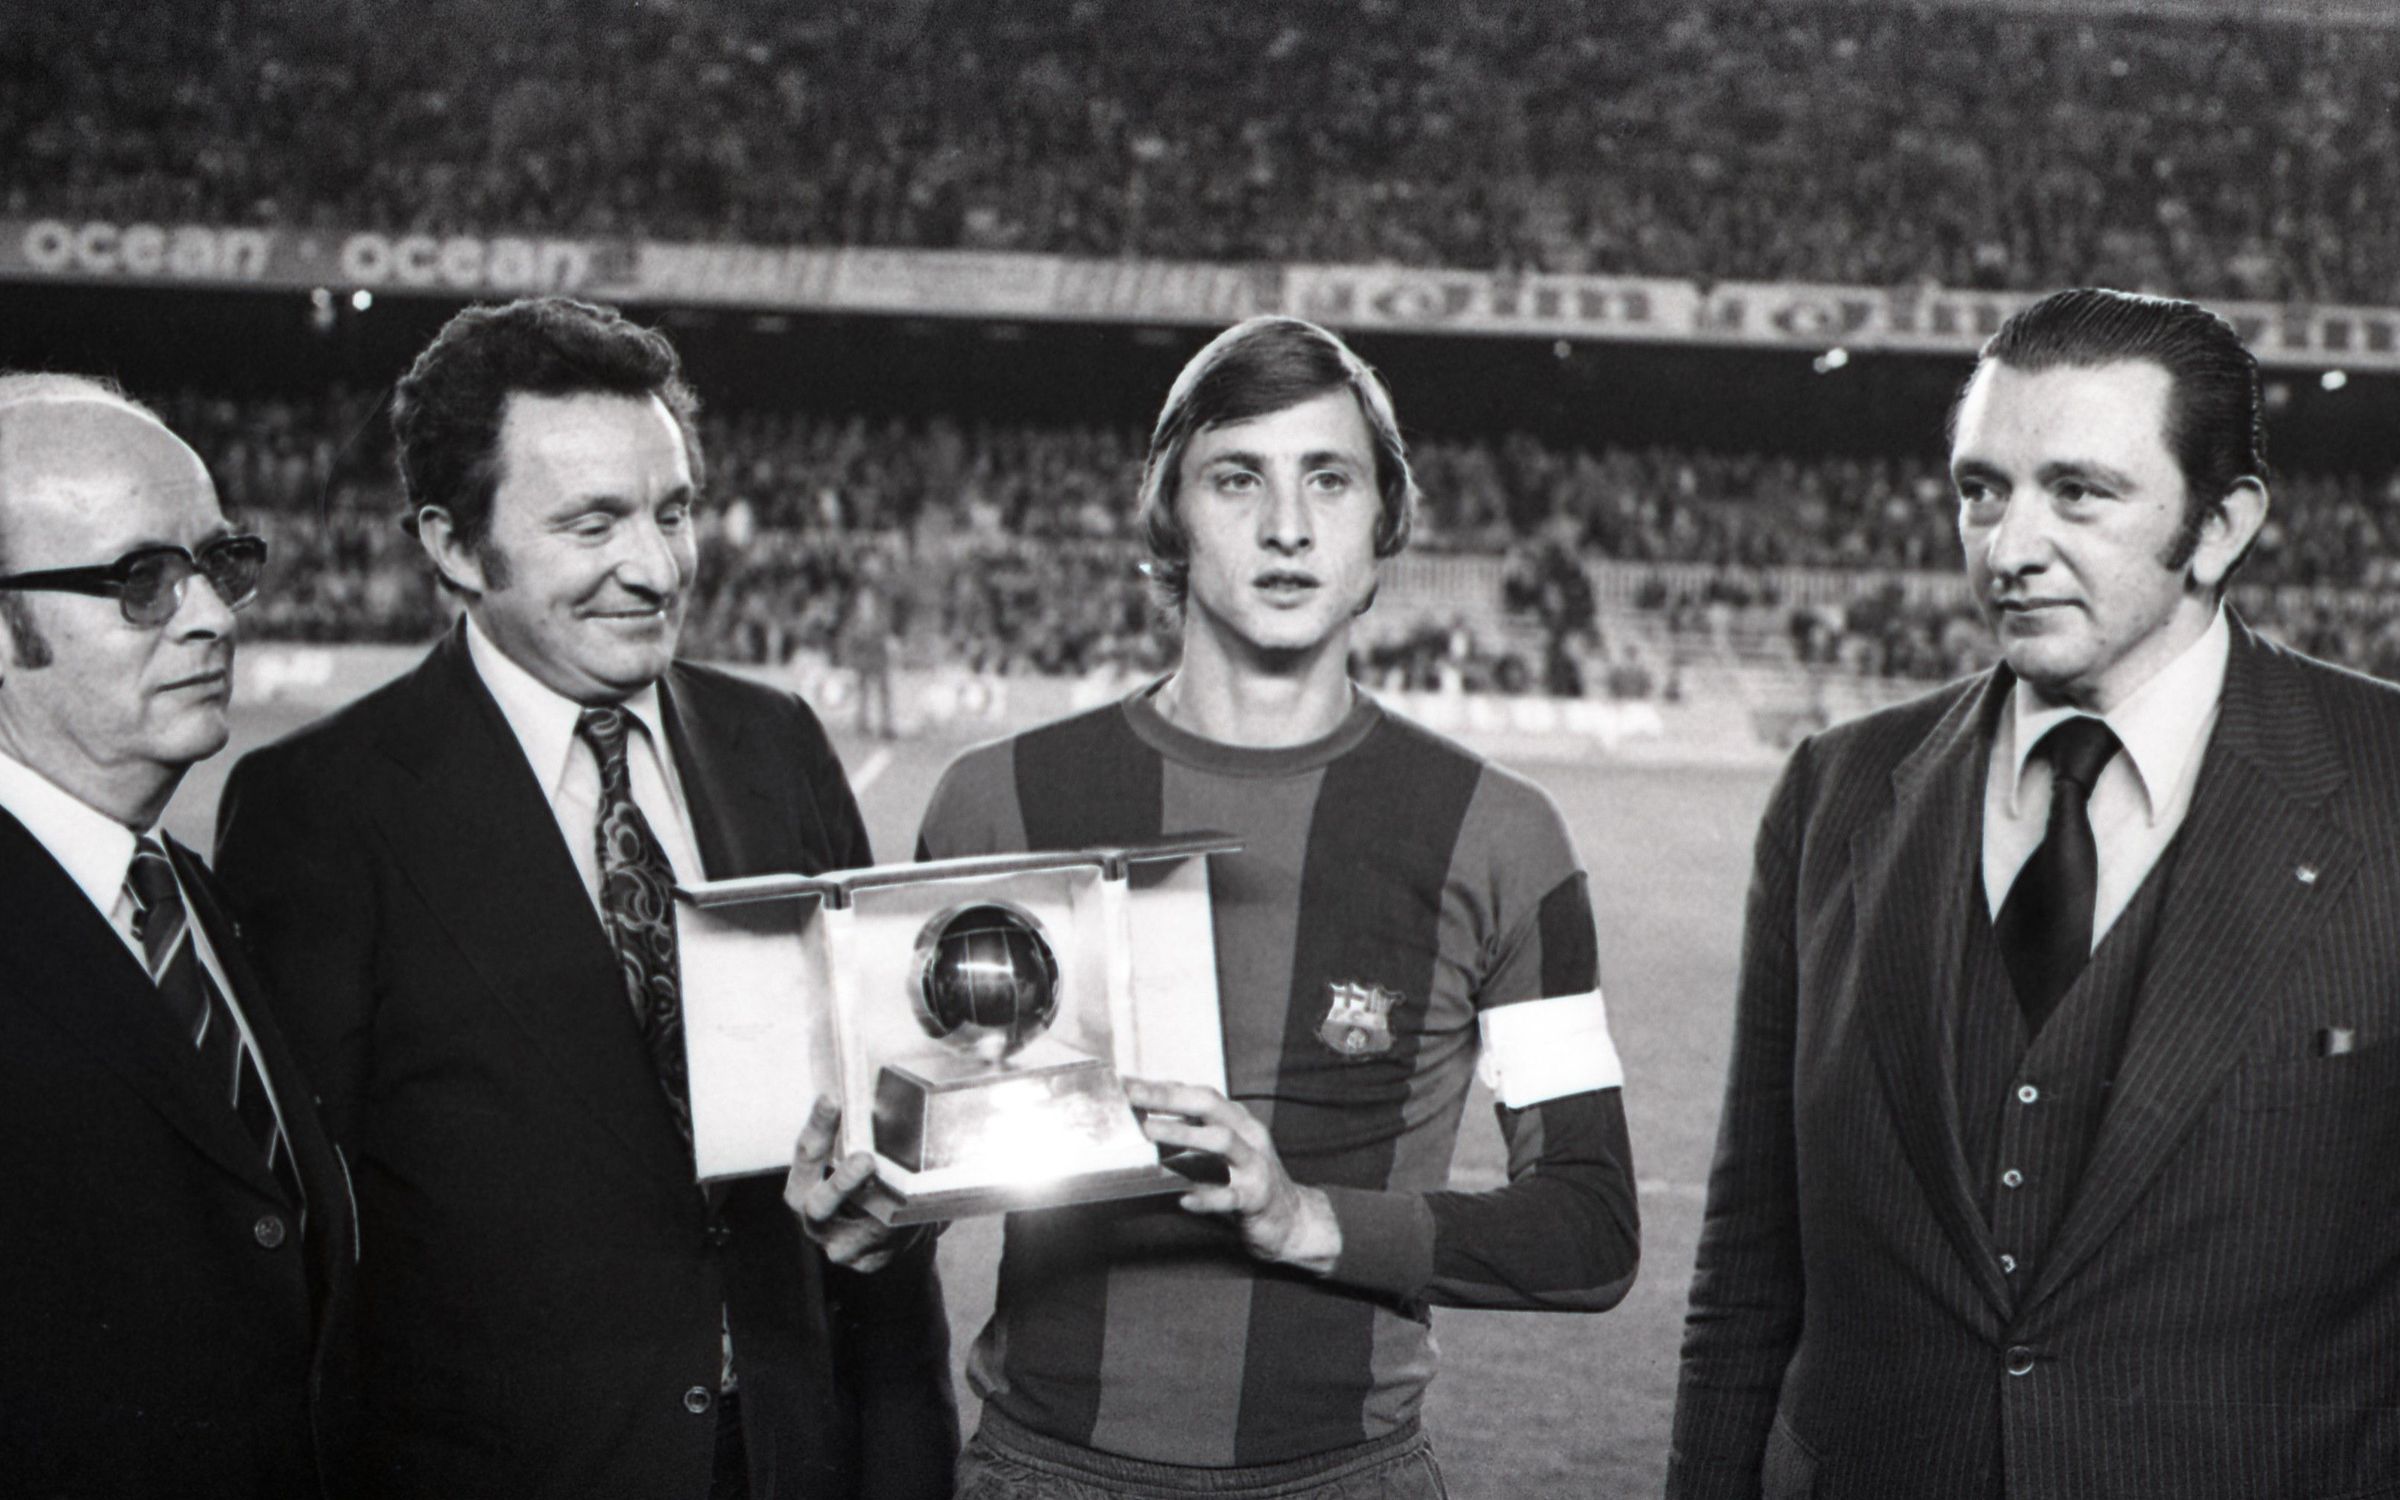 Johan-Cruyff-1974-FOTO-HORACIO-SEGU-.JPG